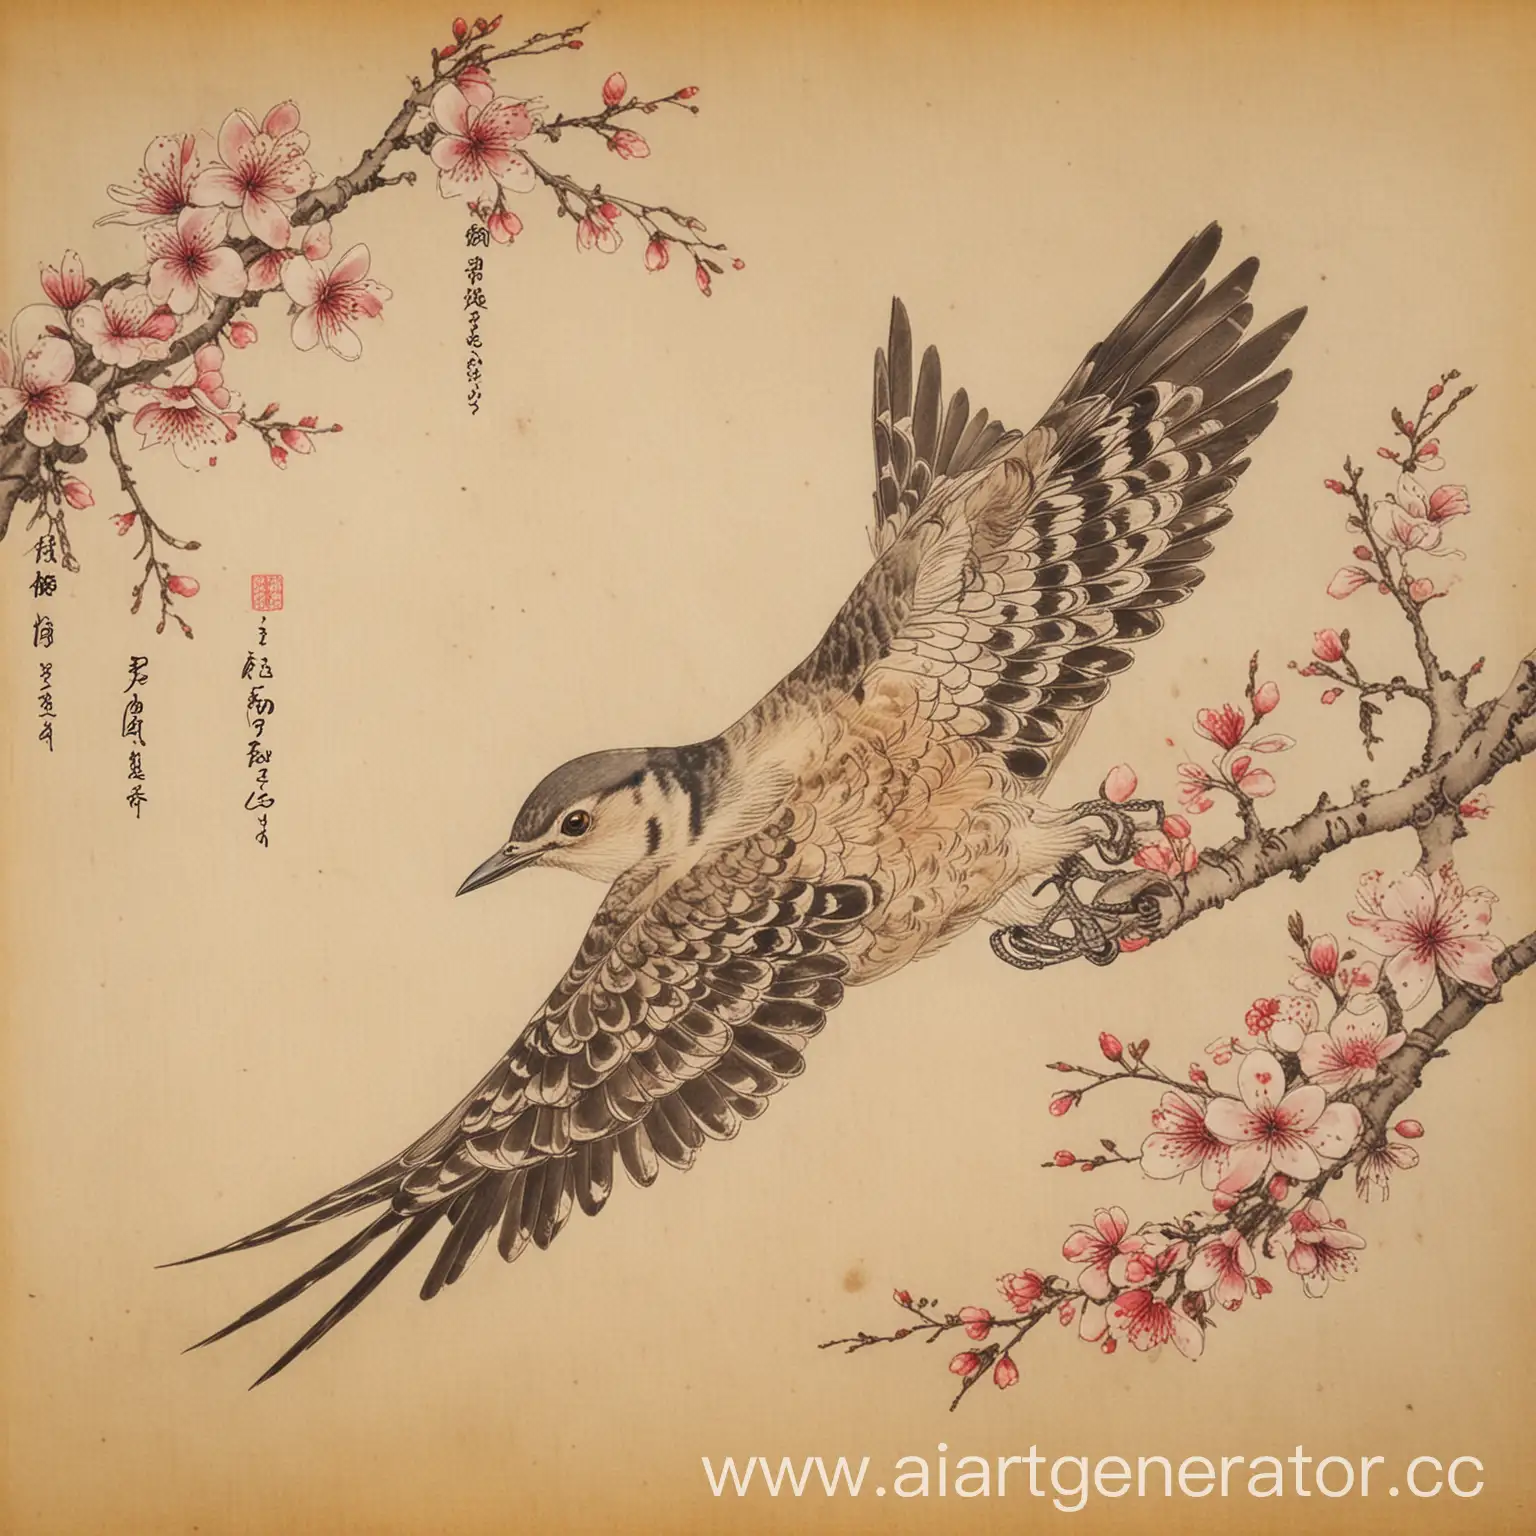 Японская кукушка хототогису. Она нарисована во время полёта. Рисунок кукушки на старом пергаменте. Пергамент от времени пожелтел и стёрся. Вместе с кукушкой нарисованы цветы сакуры. На самом рисунке много пустого места.